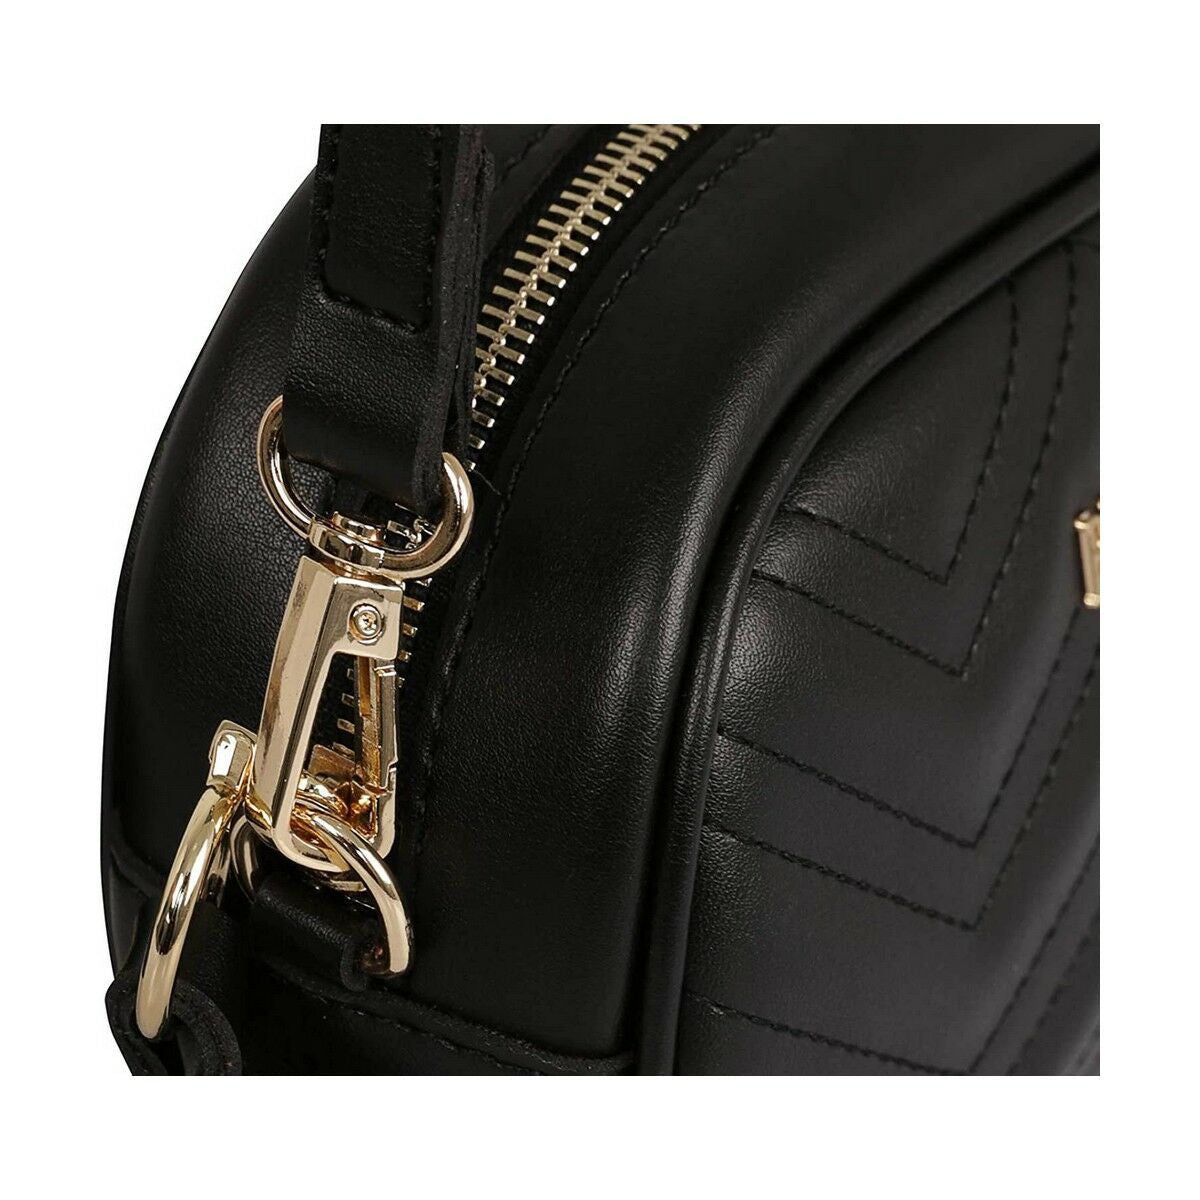 Kaufe Schwarze Damen Handtasche von Beverly Hills Polo Club bei AWK Flagship um € 51.00